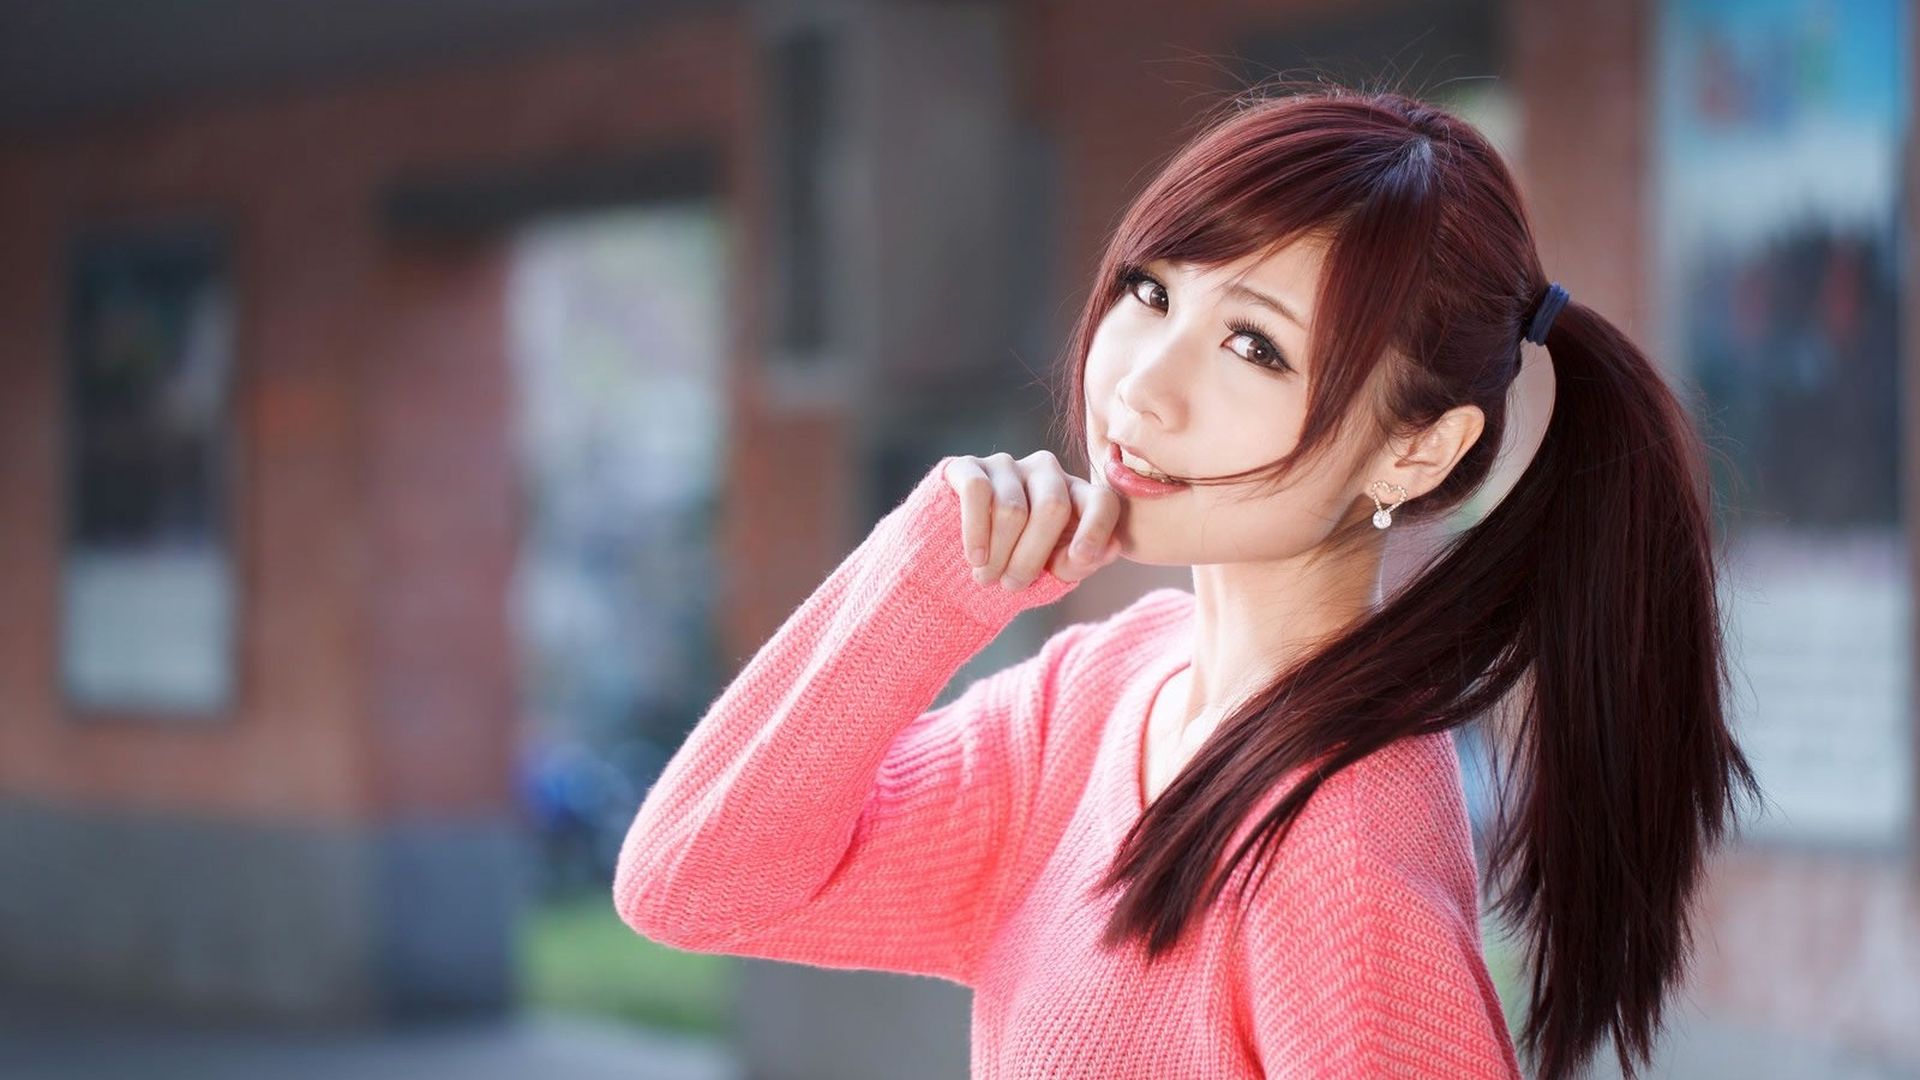 台湾人气模特张雅筑粉色毛衣户外街拍高清桌面壁纸